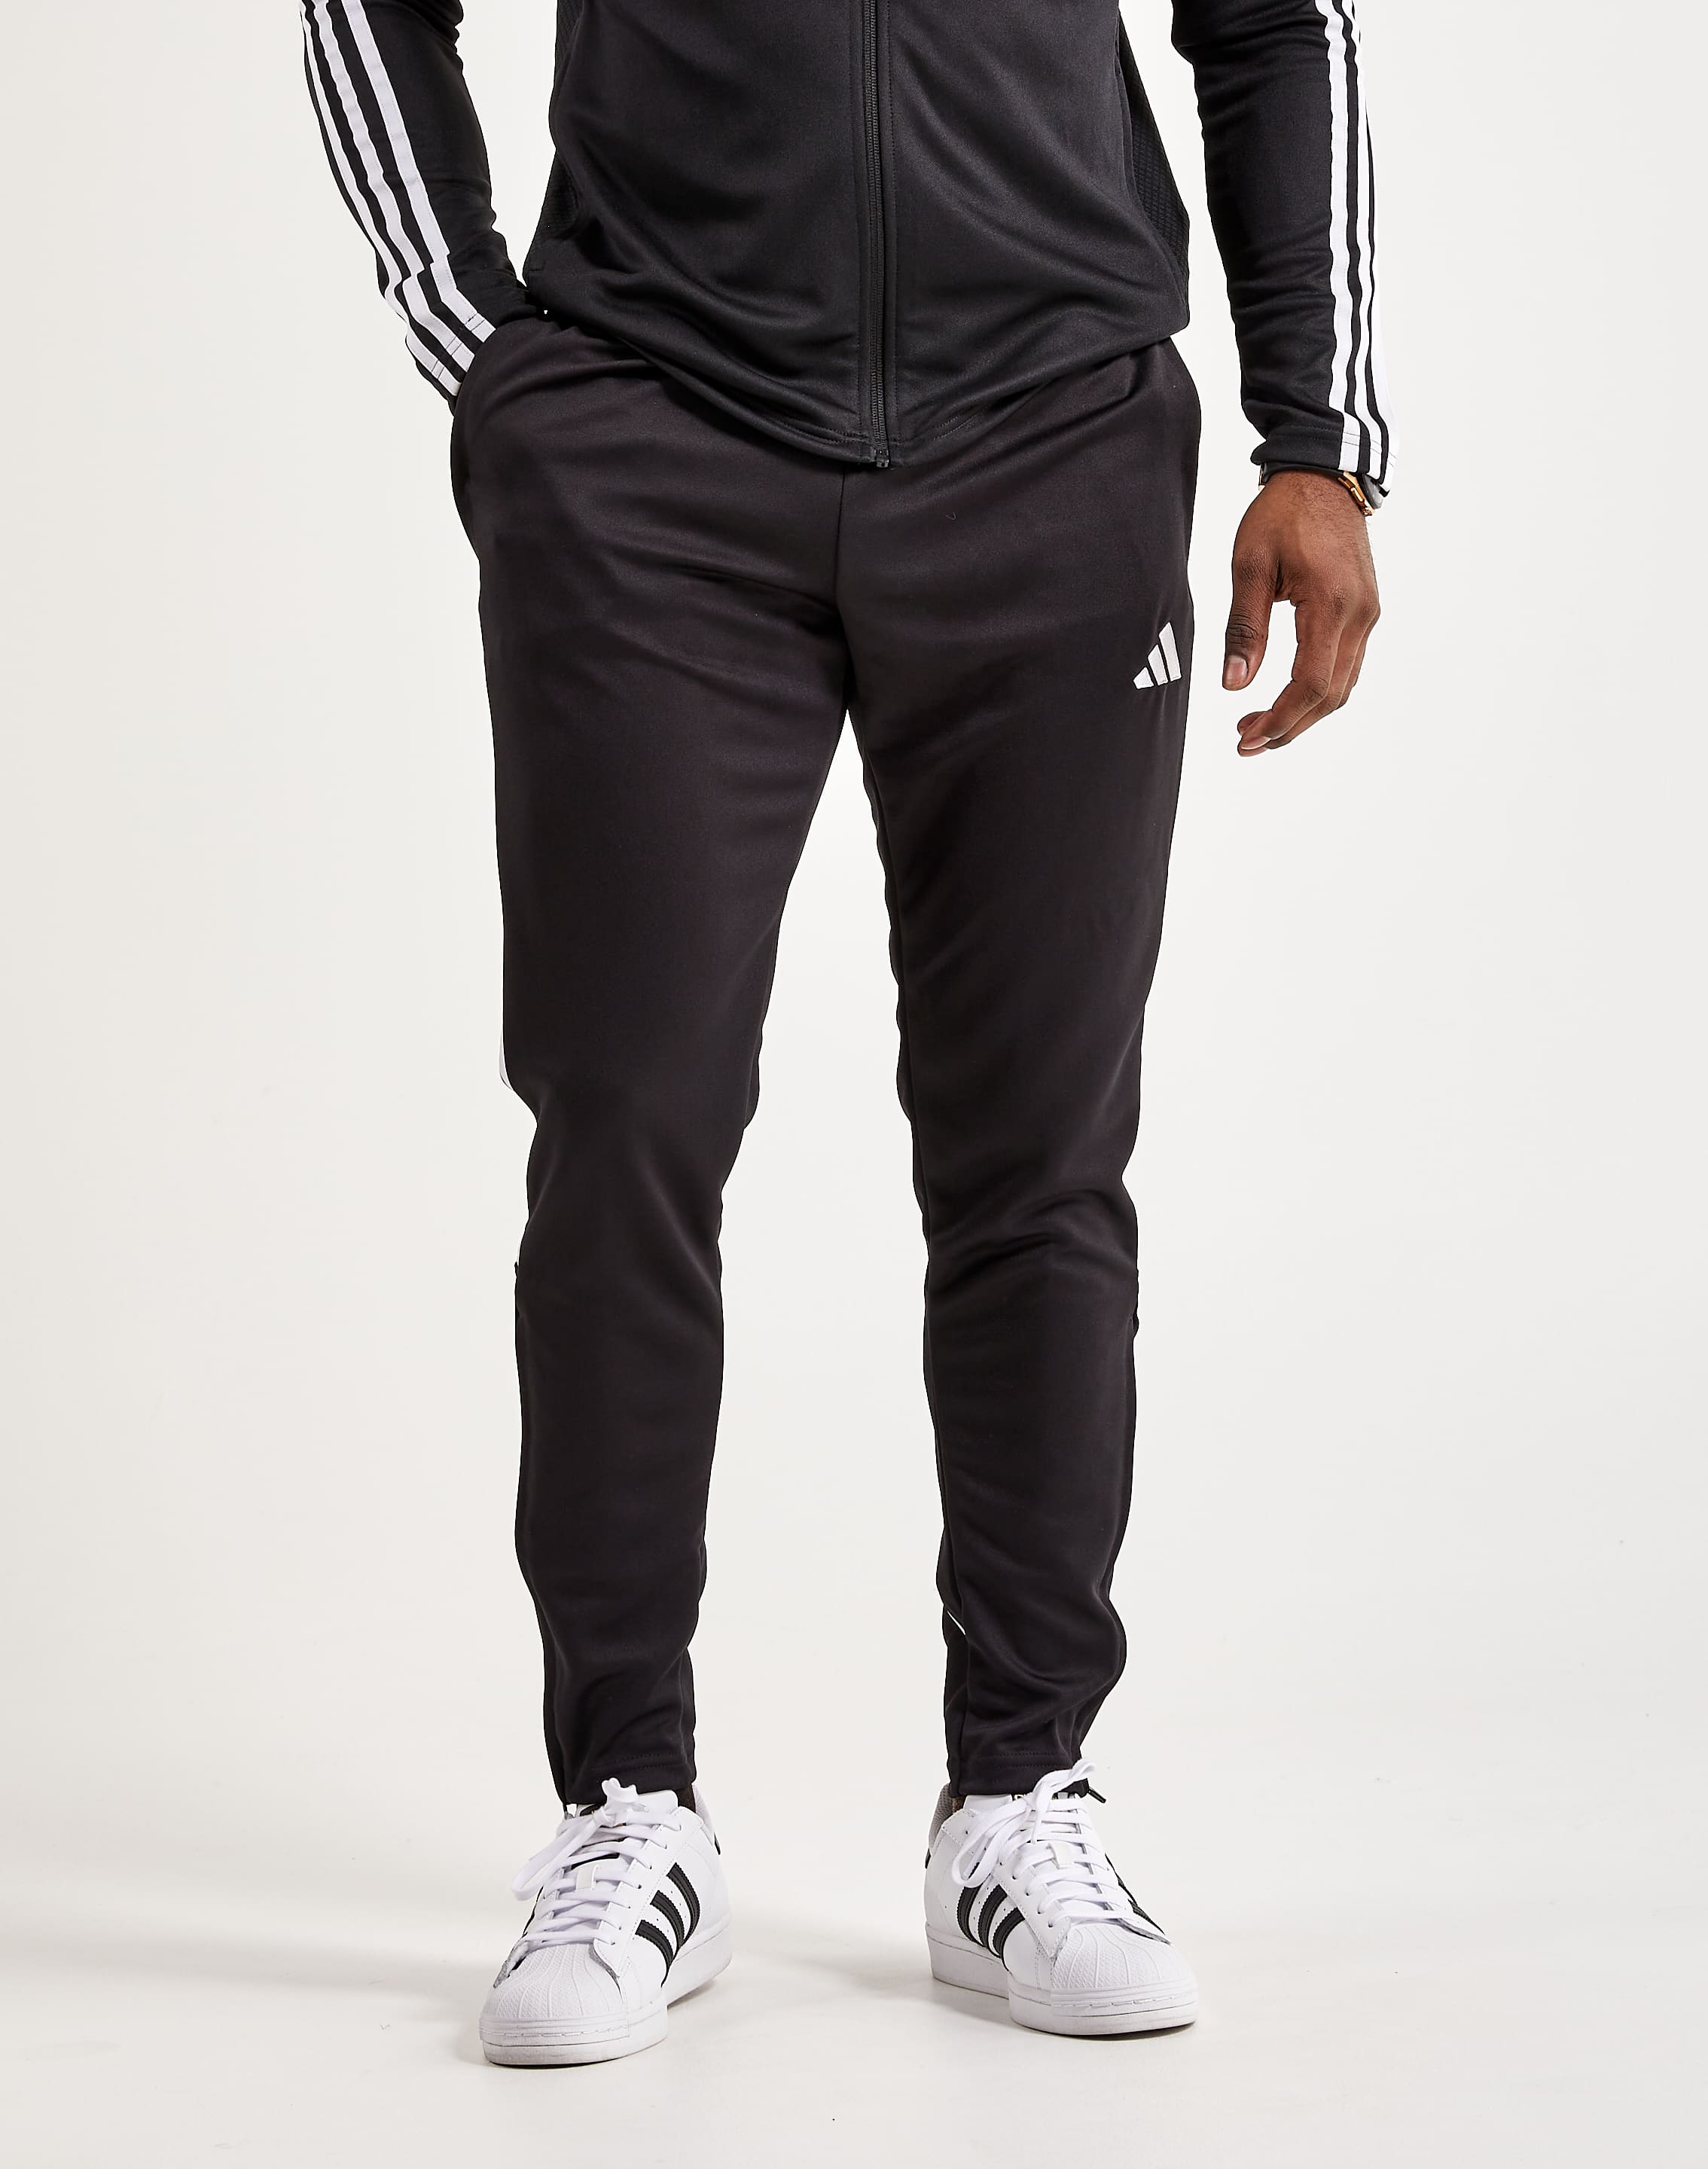 Adidas League Pants – DTLR